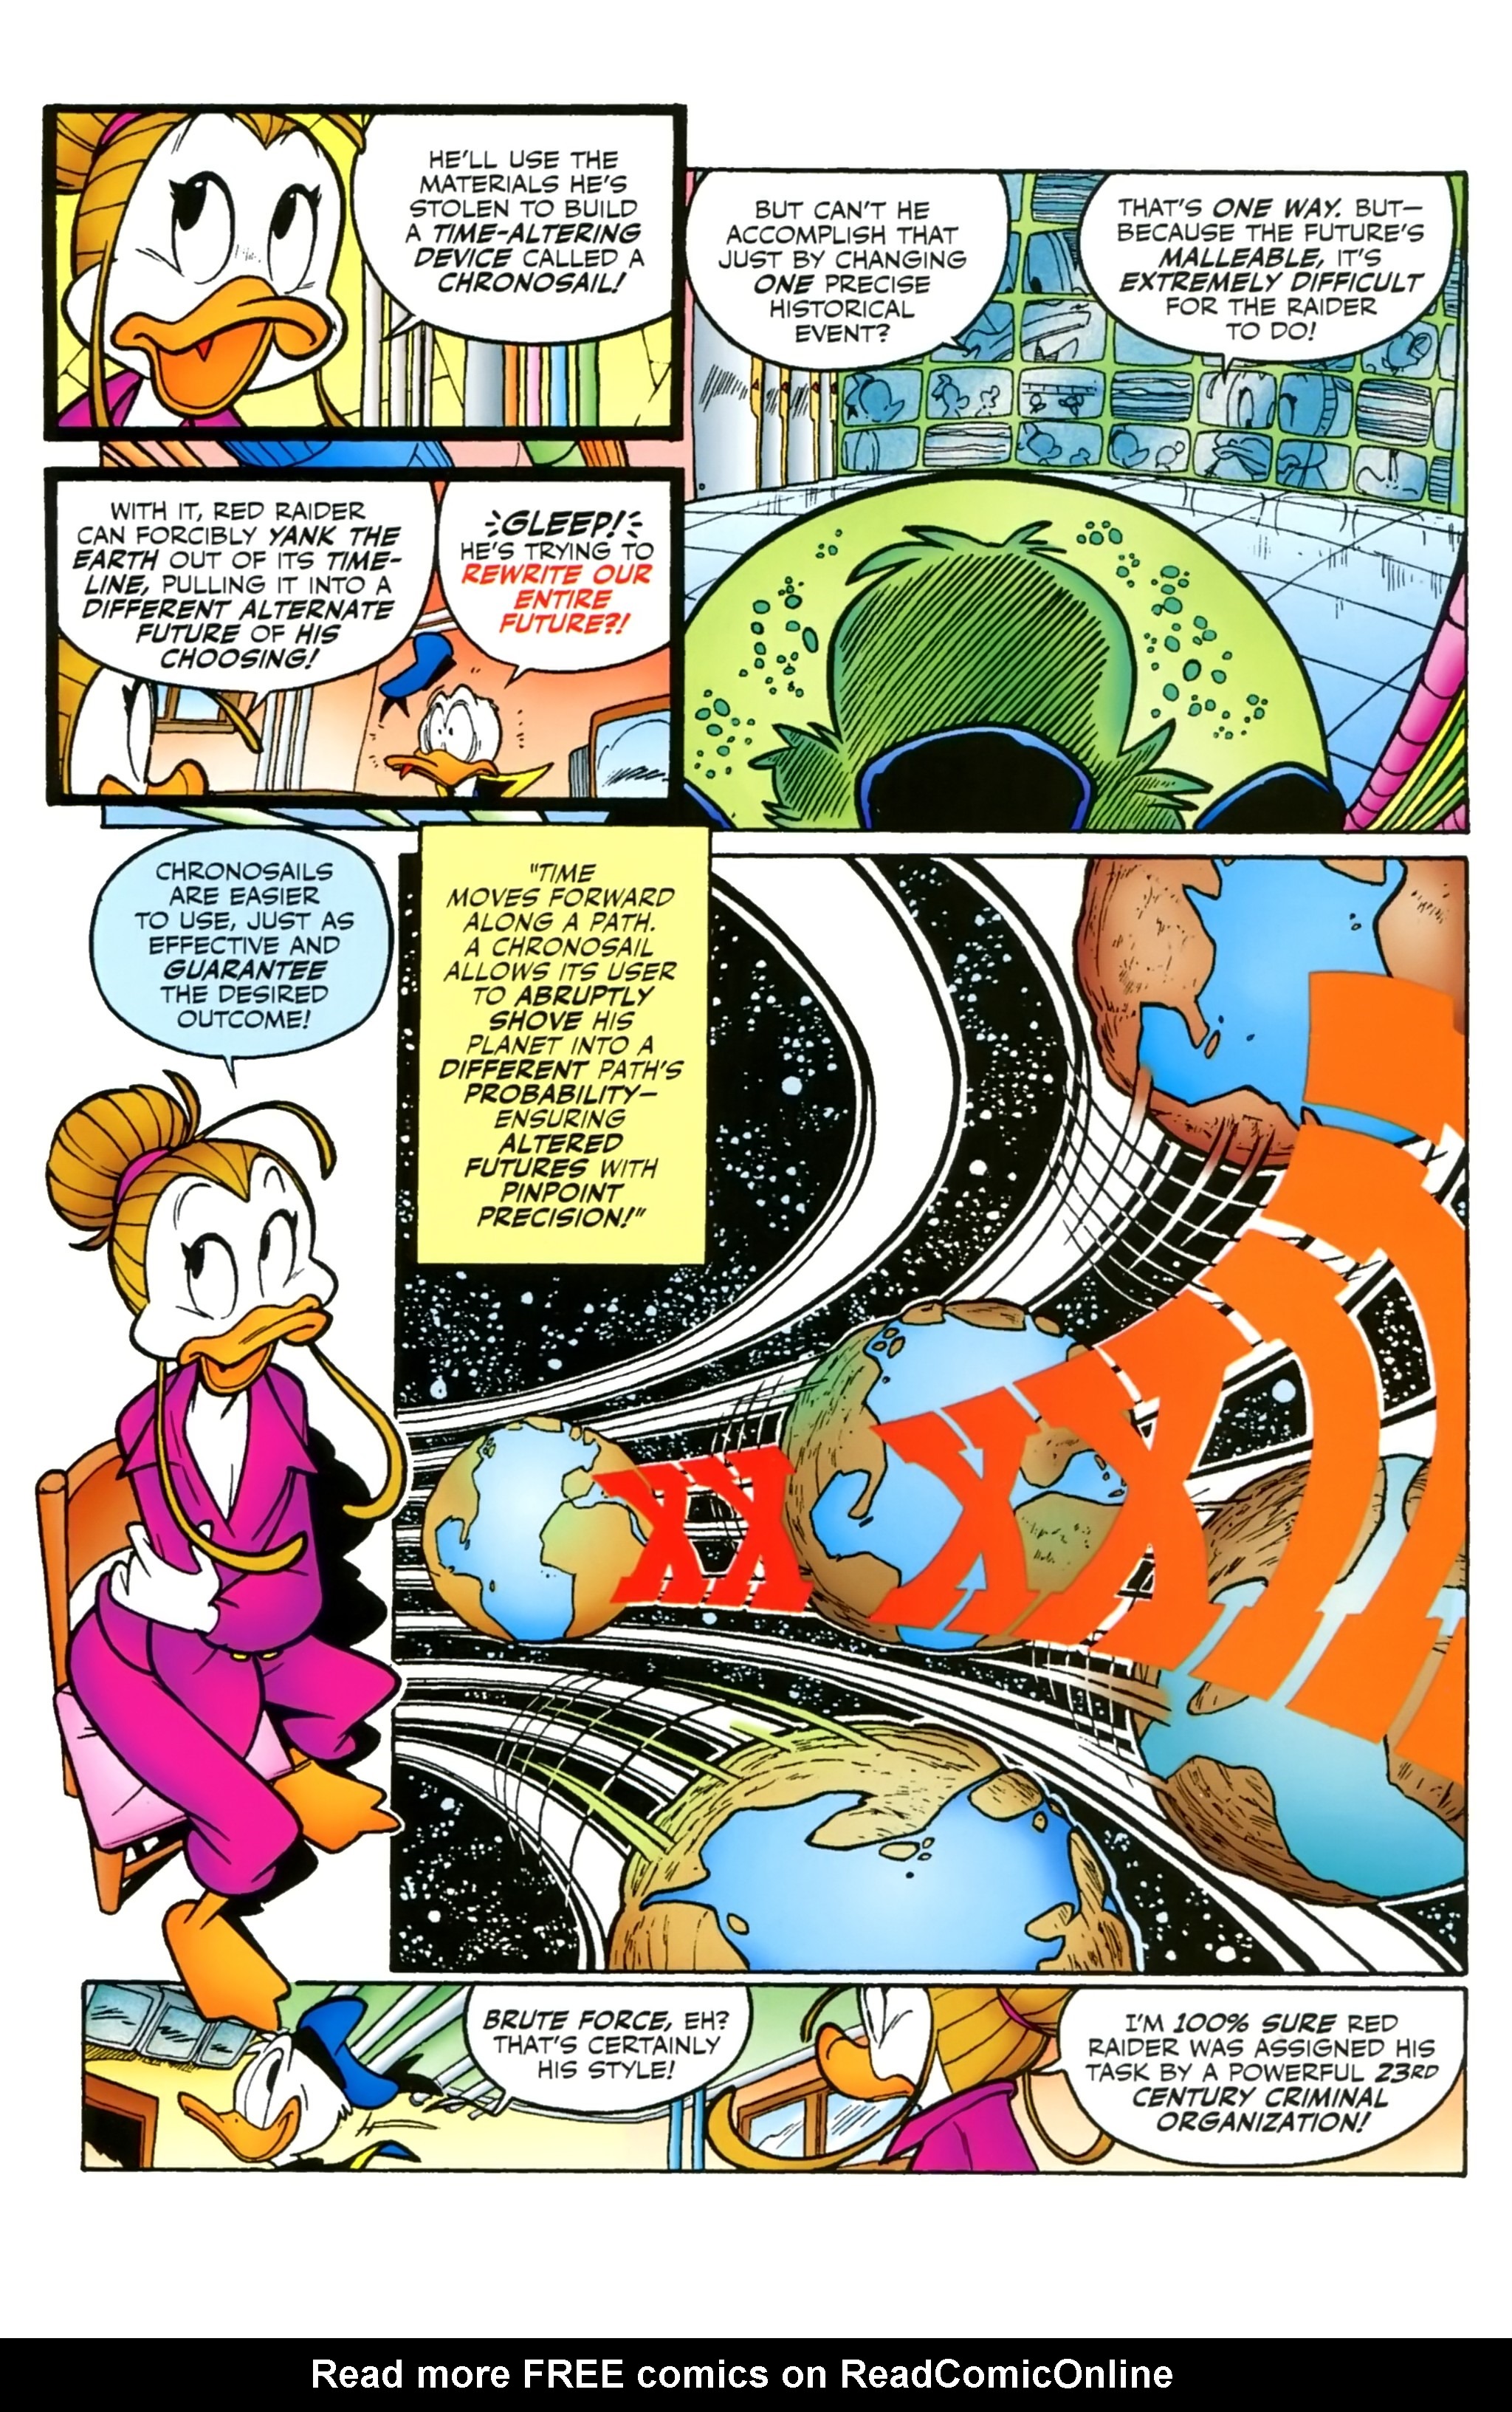 Read online Duck Avenger comic -  Issue #1 - 49